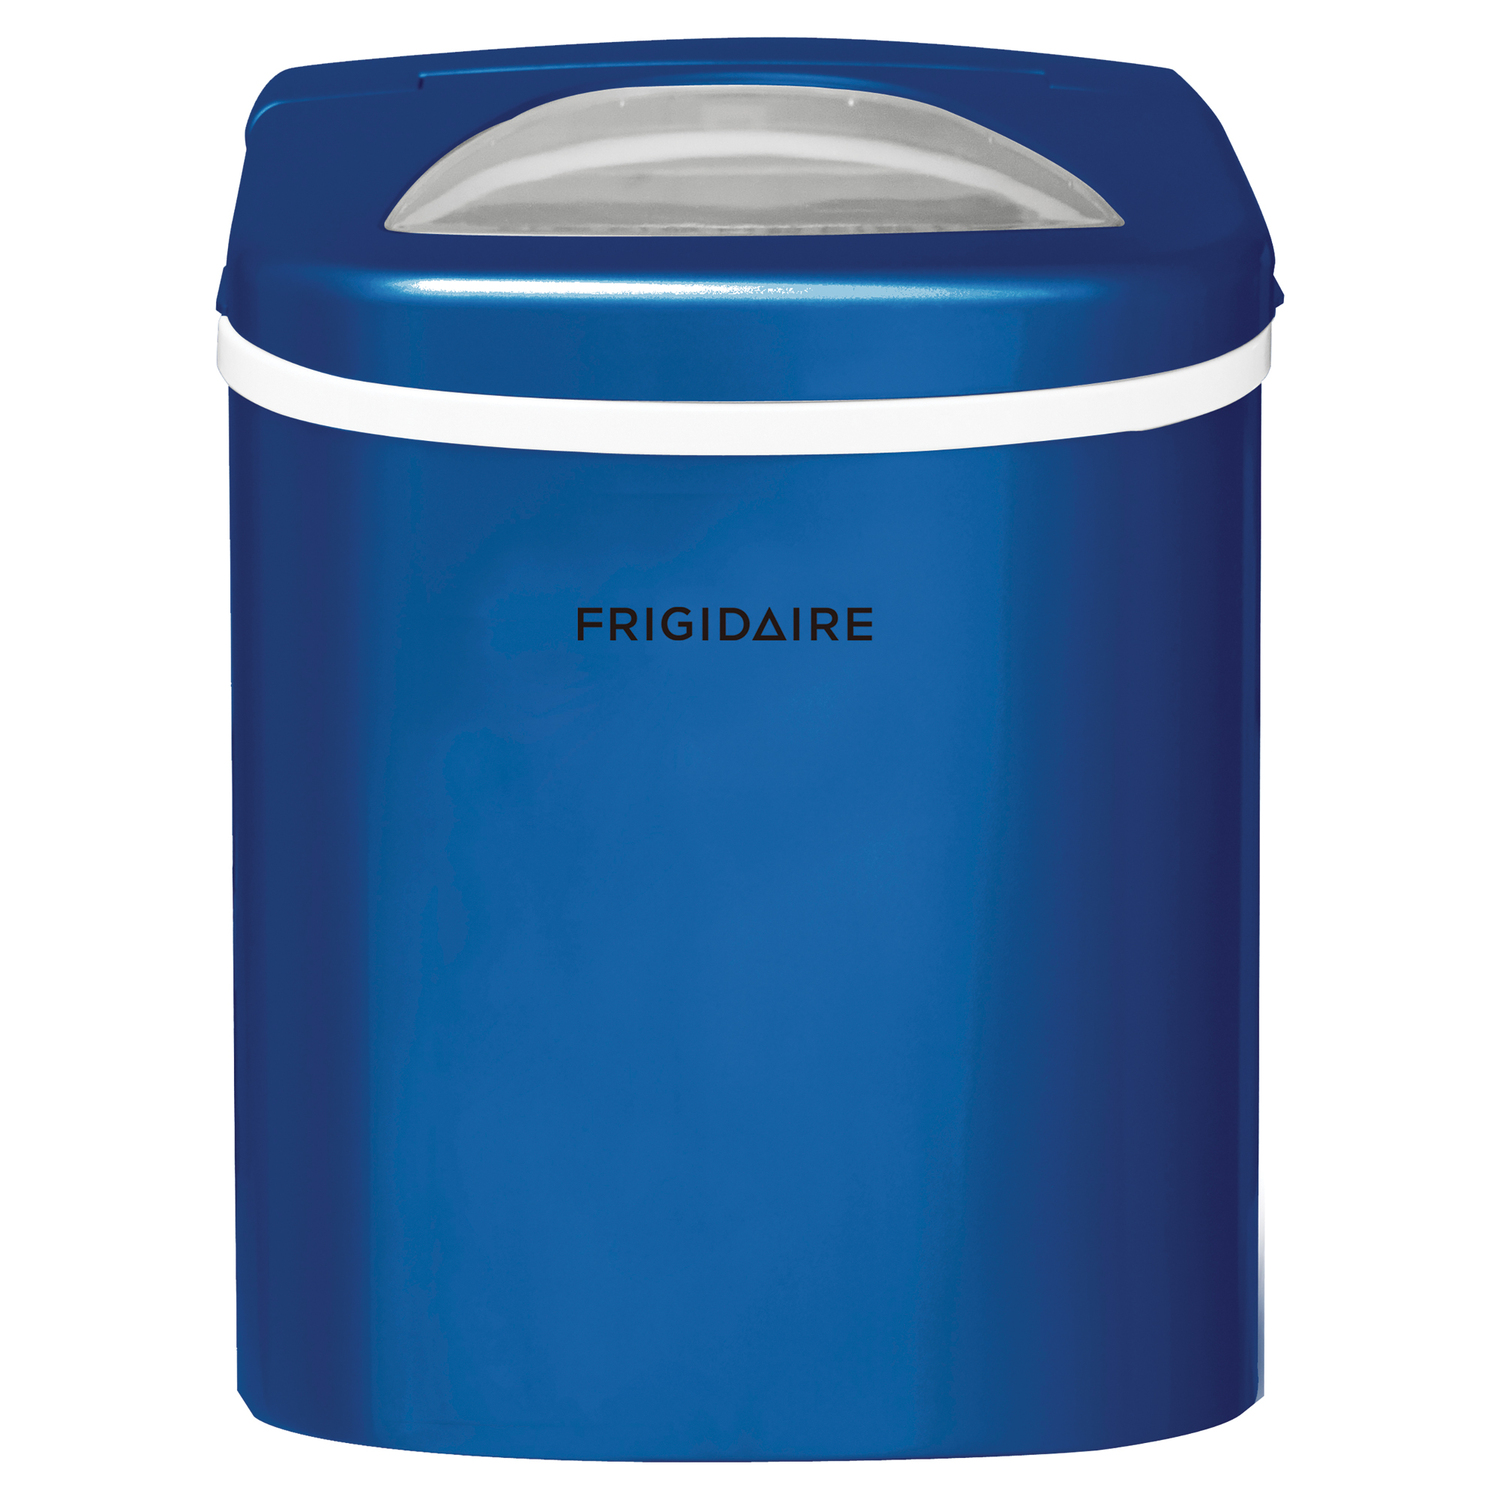 Frigidaire 26lb. Portable Countertop Ice maker, Blue, EFIC108 - Walmart.com